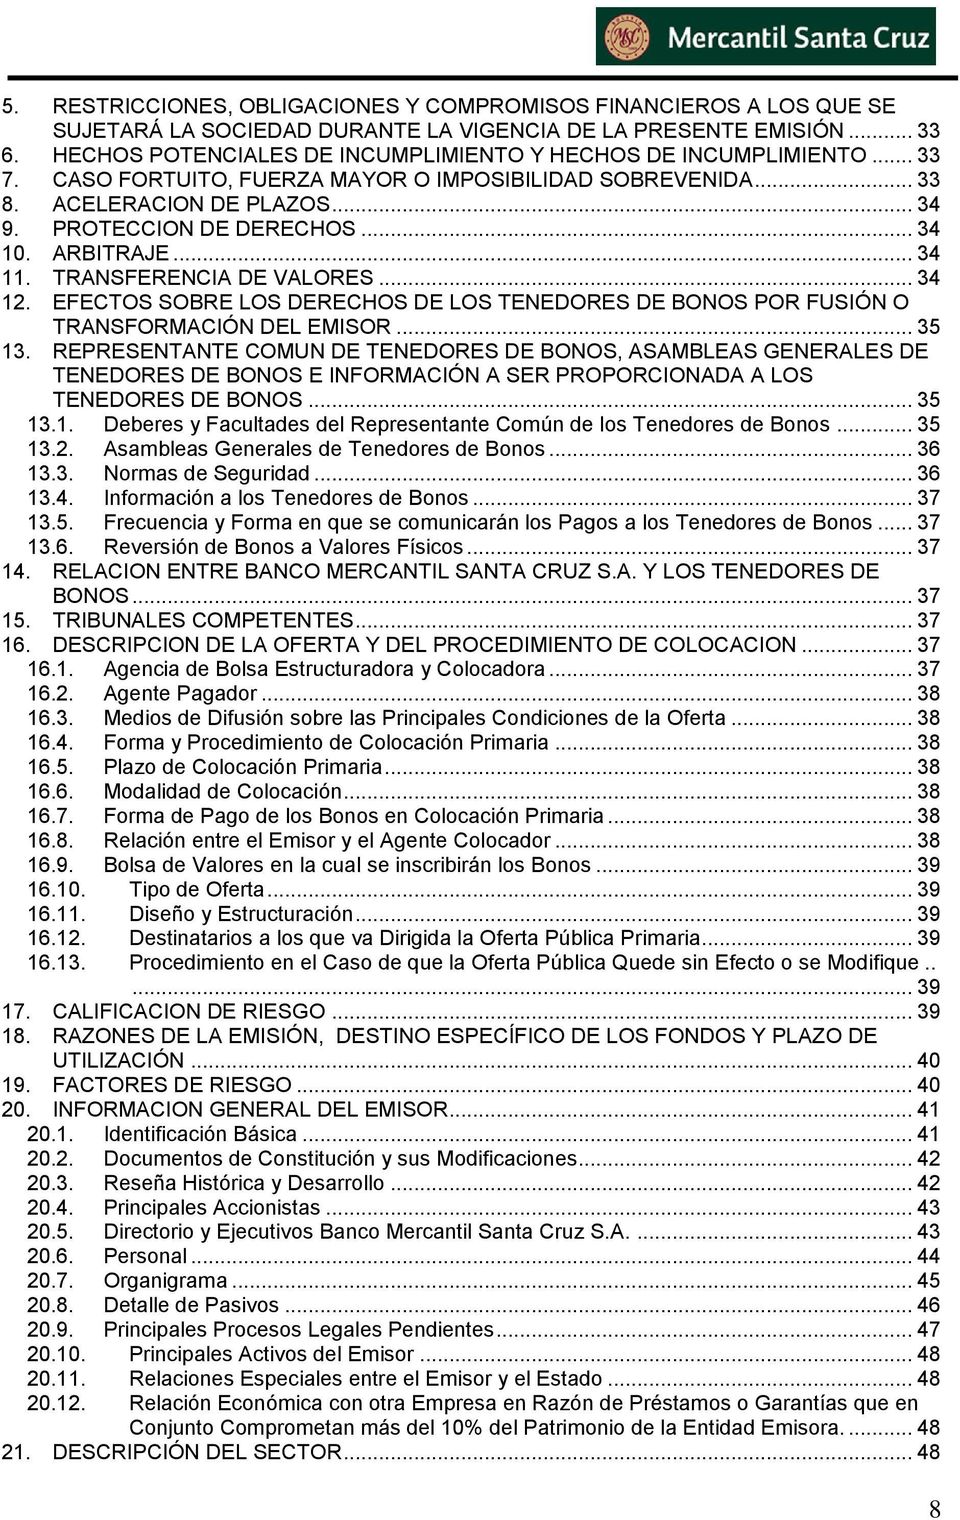 ARBITRAJE... 34 11. TRANSFERENCIA DE VALORES... 34 12. EFECTOS SOBRE LOS DERECHOS DE LOS TENEDORES DE BONOS POR FUSIÓN O TRANSFORMACIÓN DEL EMISOR... 35 13.